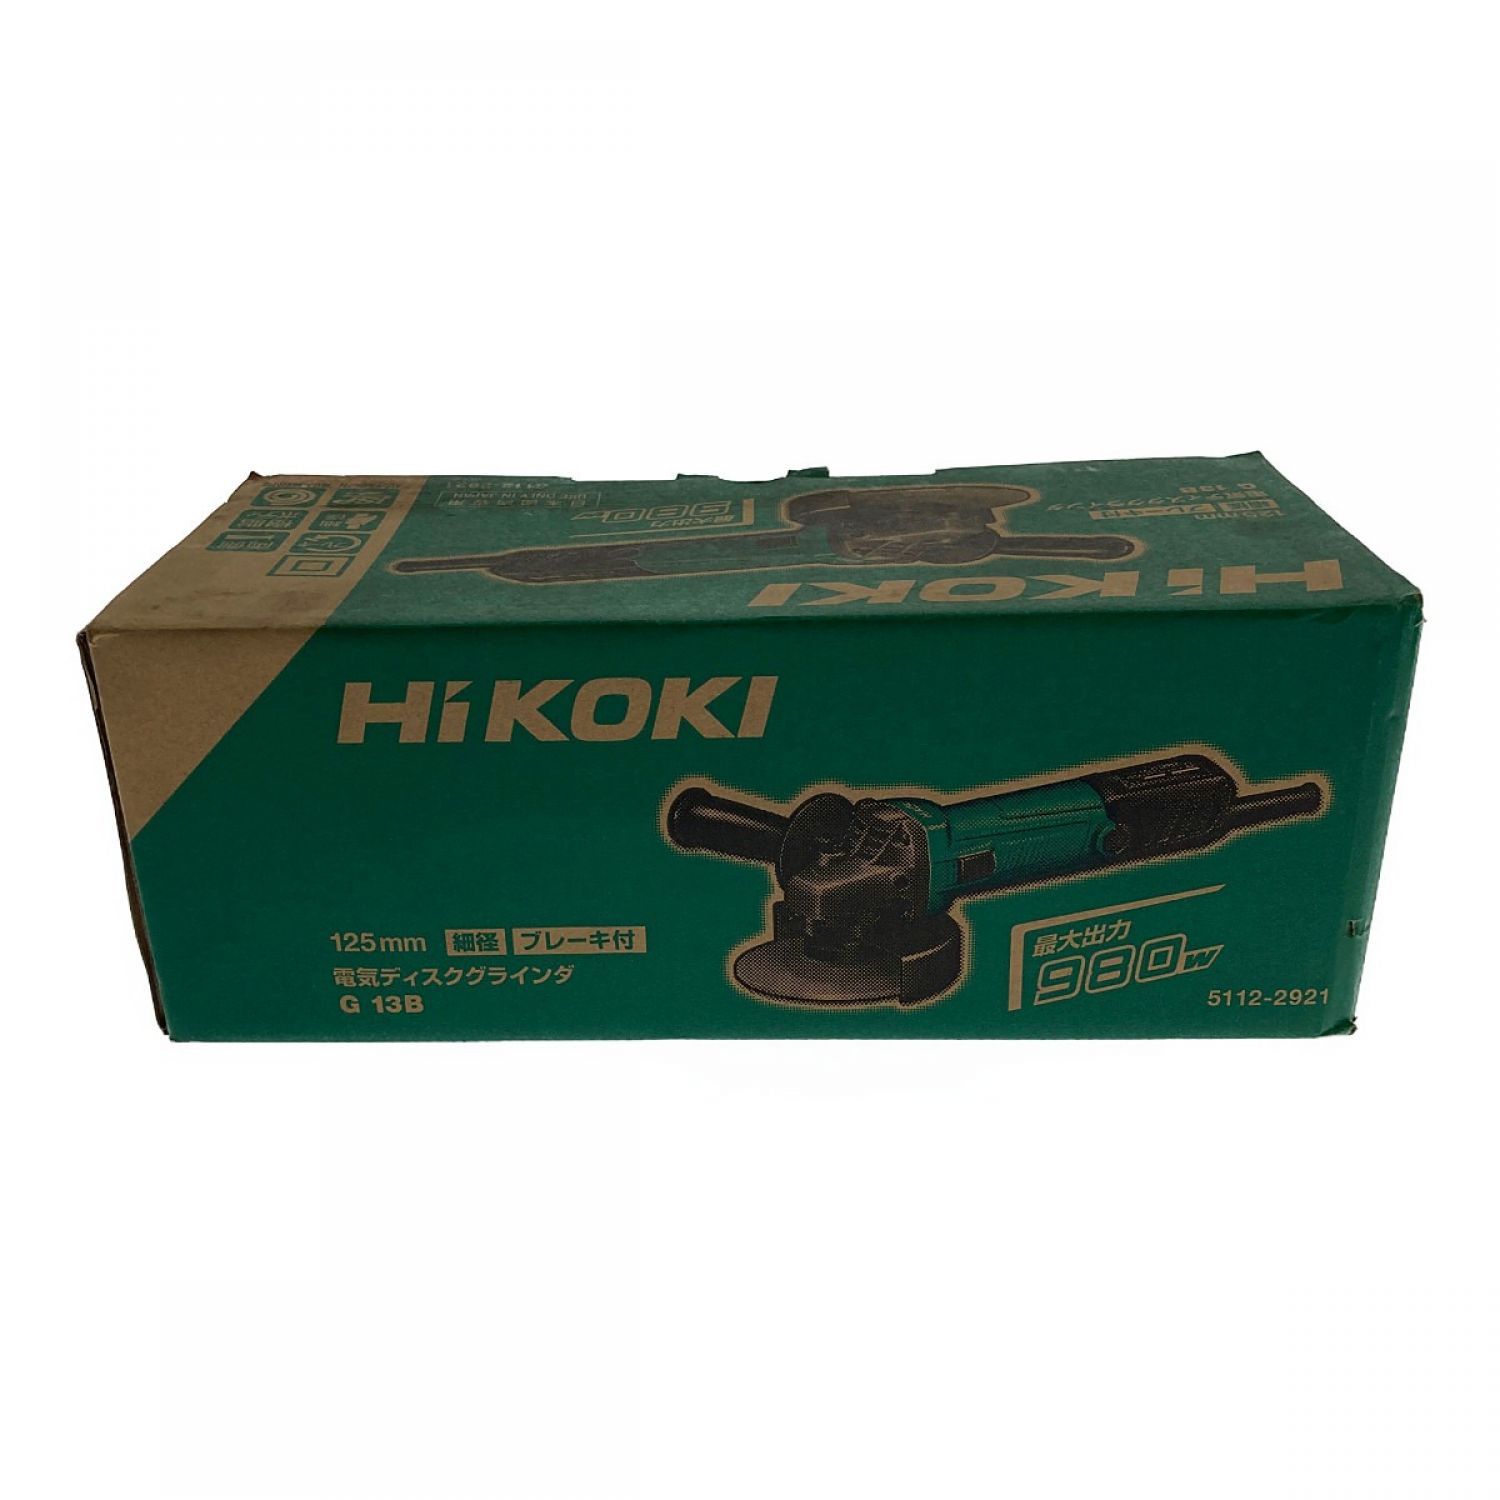 HiKOKI（ハイコーキ） 125mm 電気ディスクグラインダ G 13SPシ